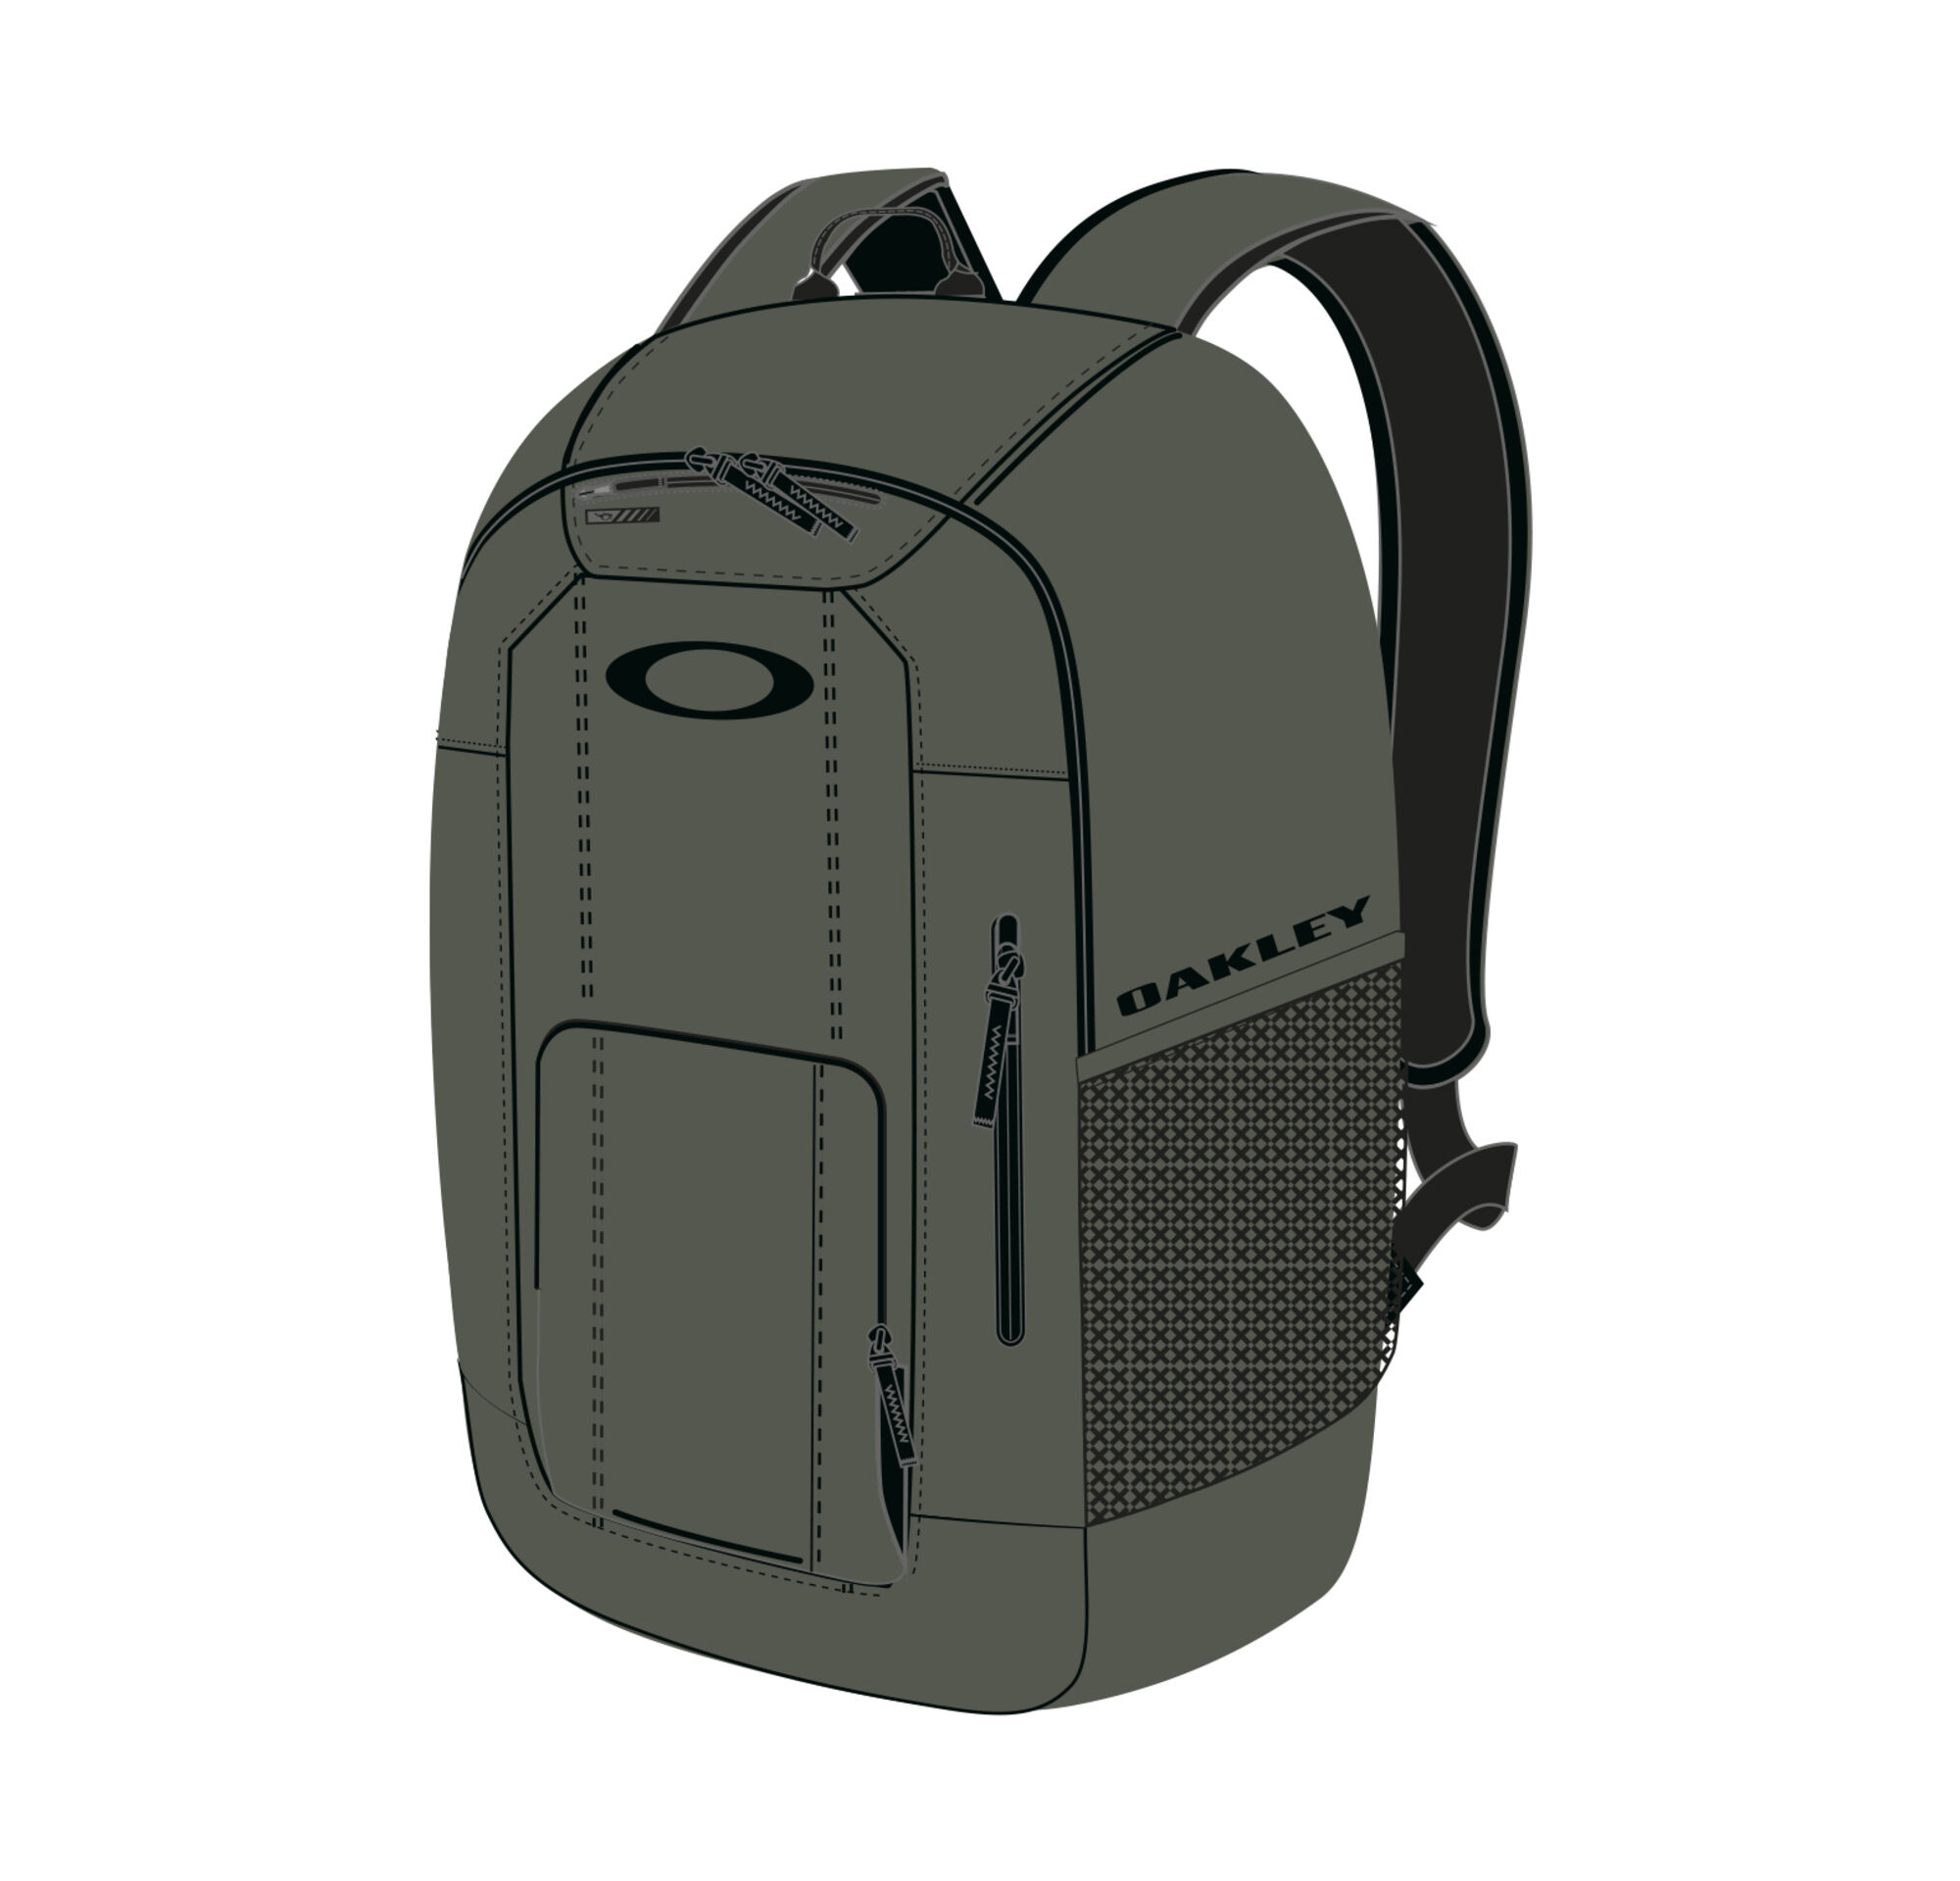 oakley men's enduro 25l 2.0 backpack